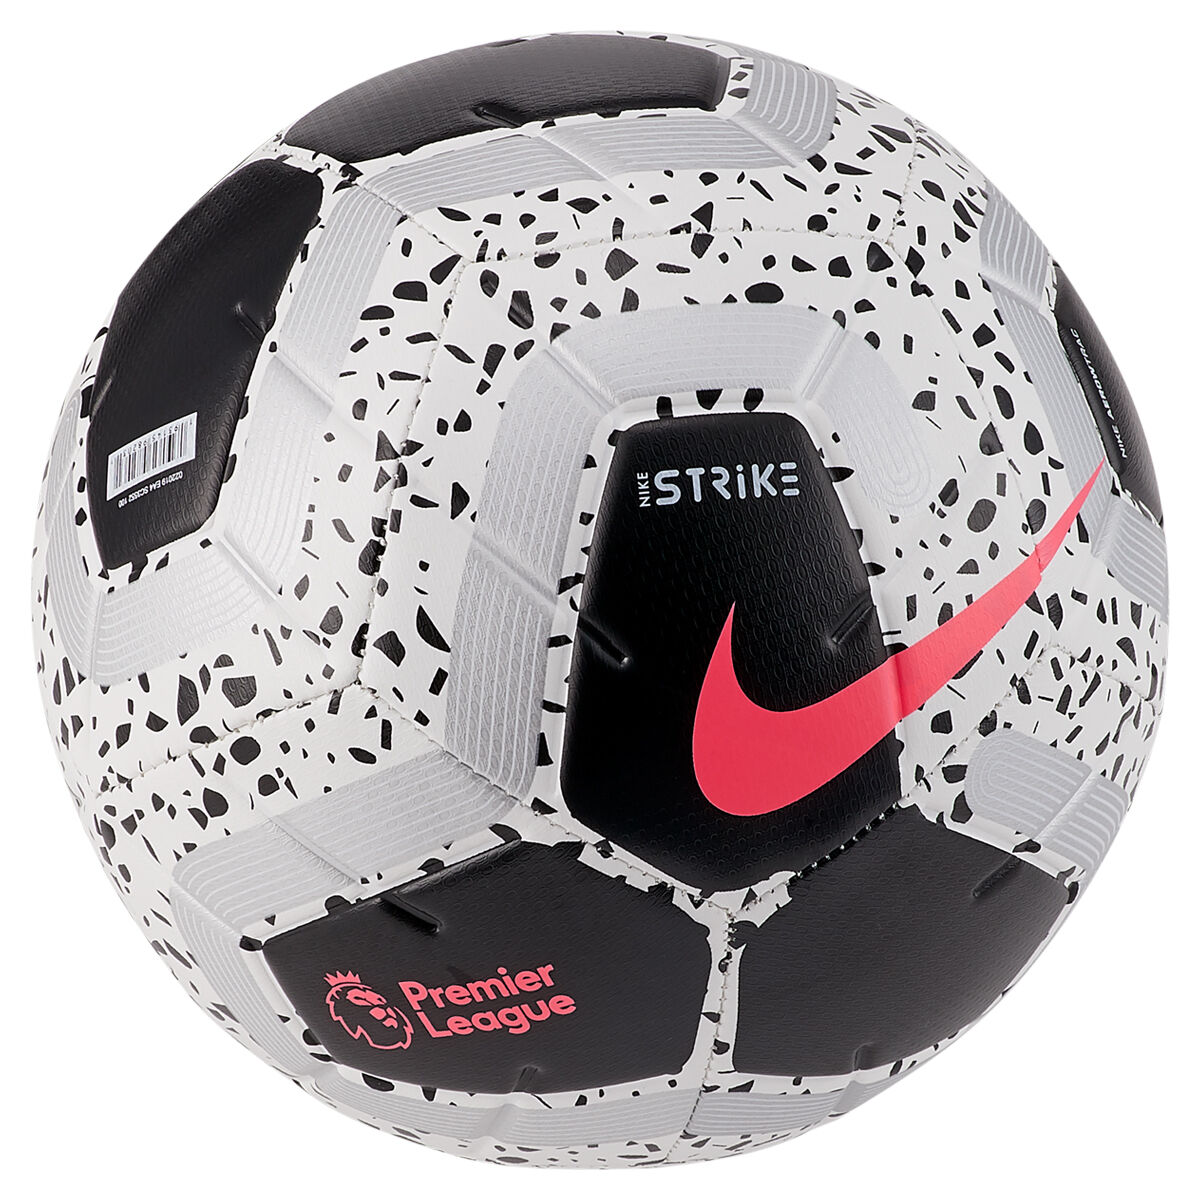 epl soccer ball